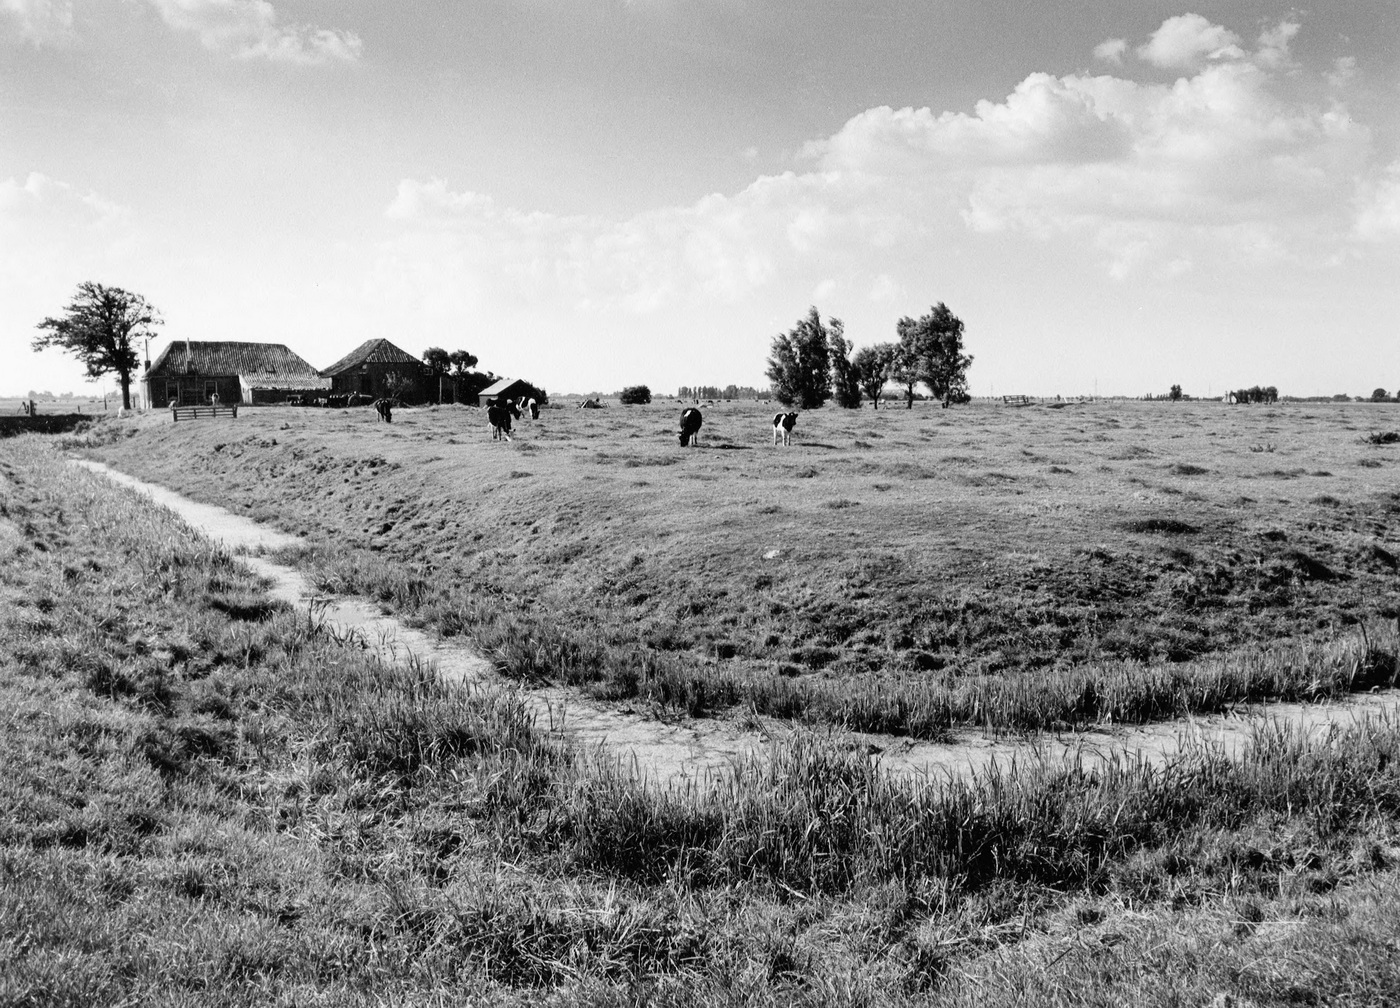 Harssens: Borgterrein van de Harssensborg. Koeien lopen in de wei. De sloot vormt de begrenzing. Foto: M.A. Douma, 1972. Bron: RHC GA, Groninger Archieven, Beeldbank Groningen.